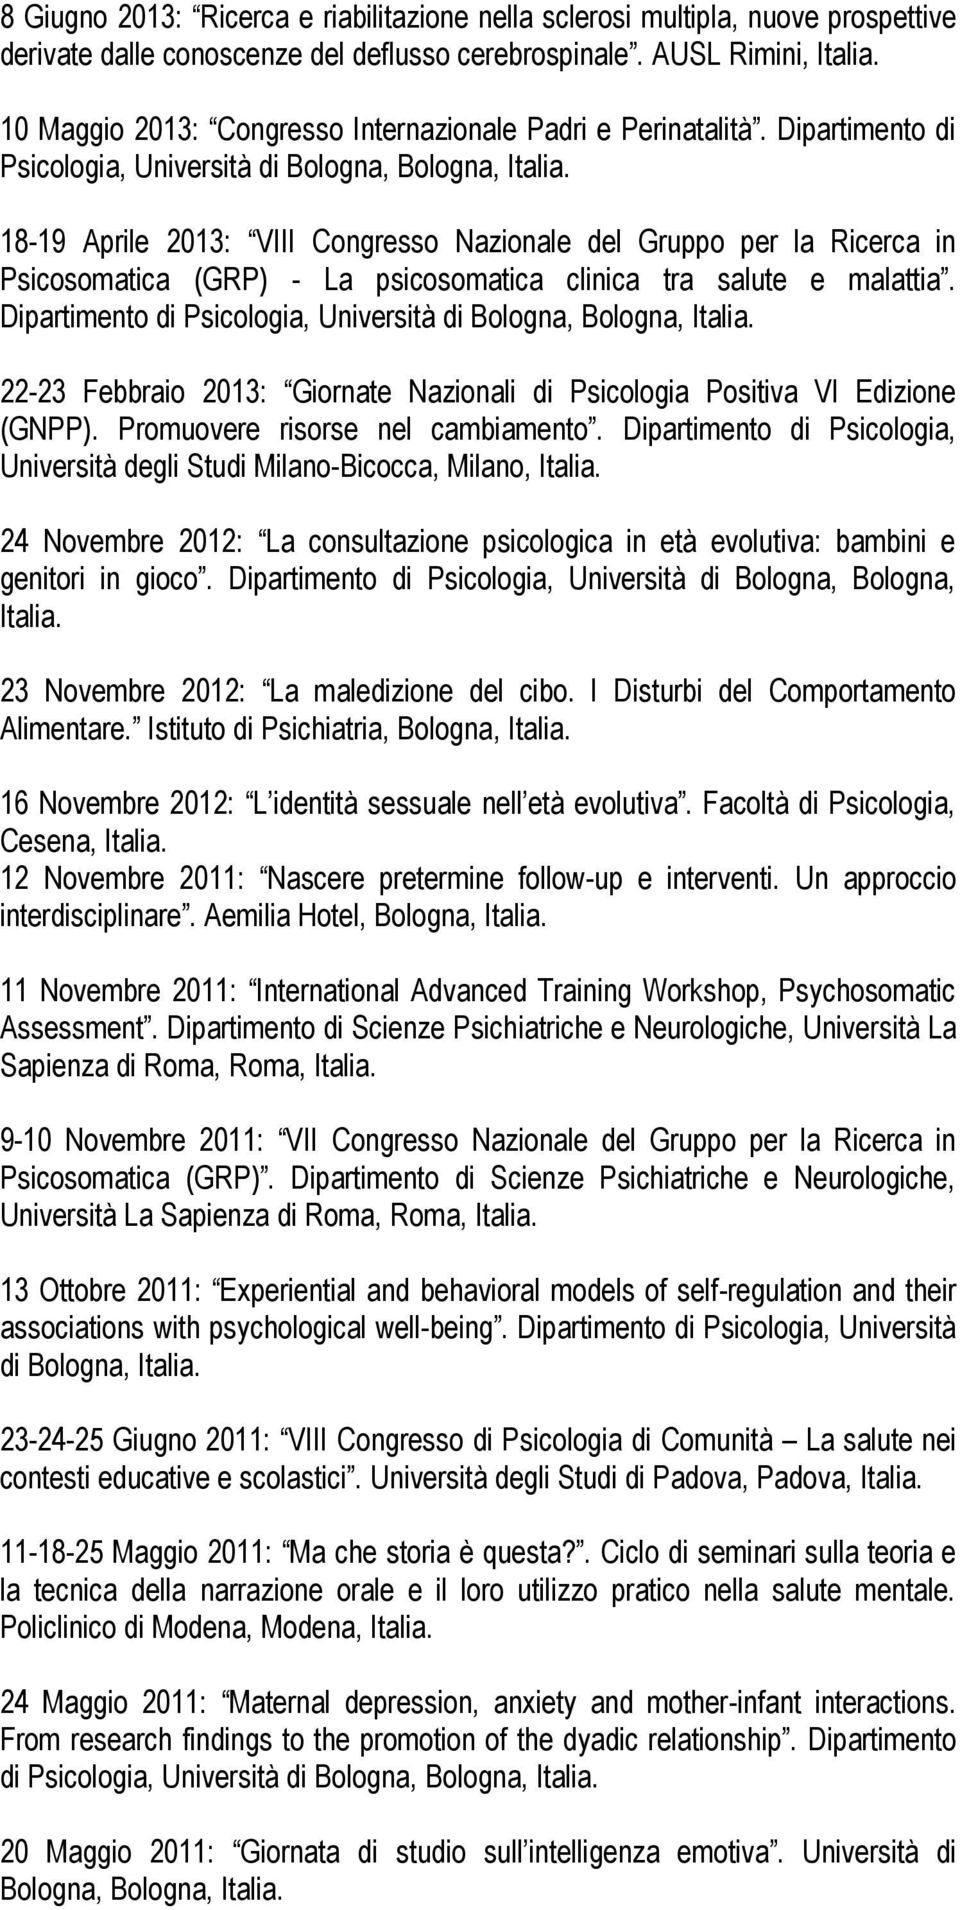 18-19 Aprile 2013: VIII Congresso Nazionale del Gruppo per la Ricerca in Psicosomatica (GRP) - La psicosomatica clinica tra salute e malattia.